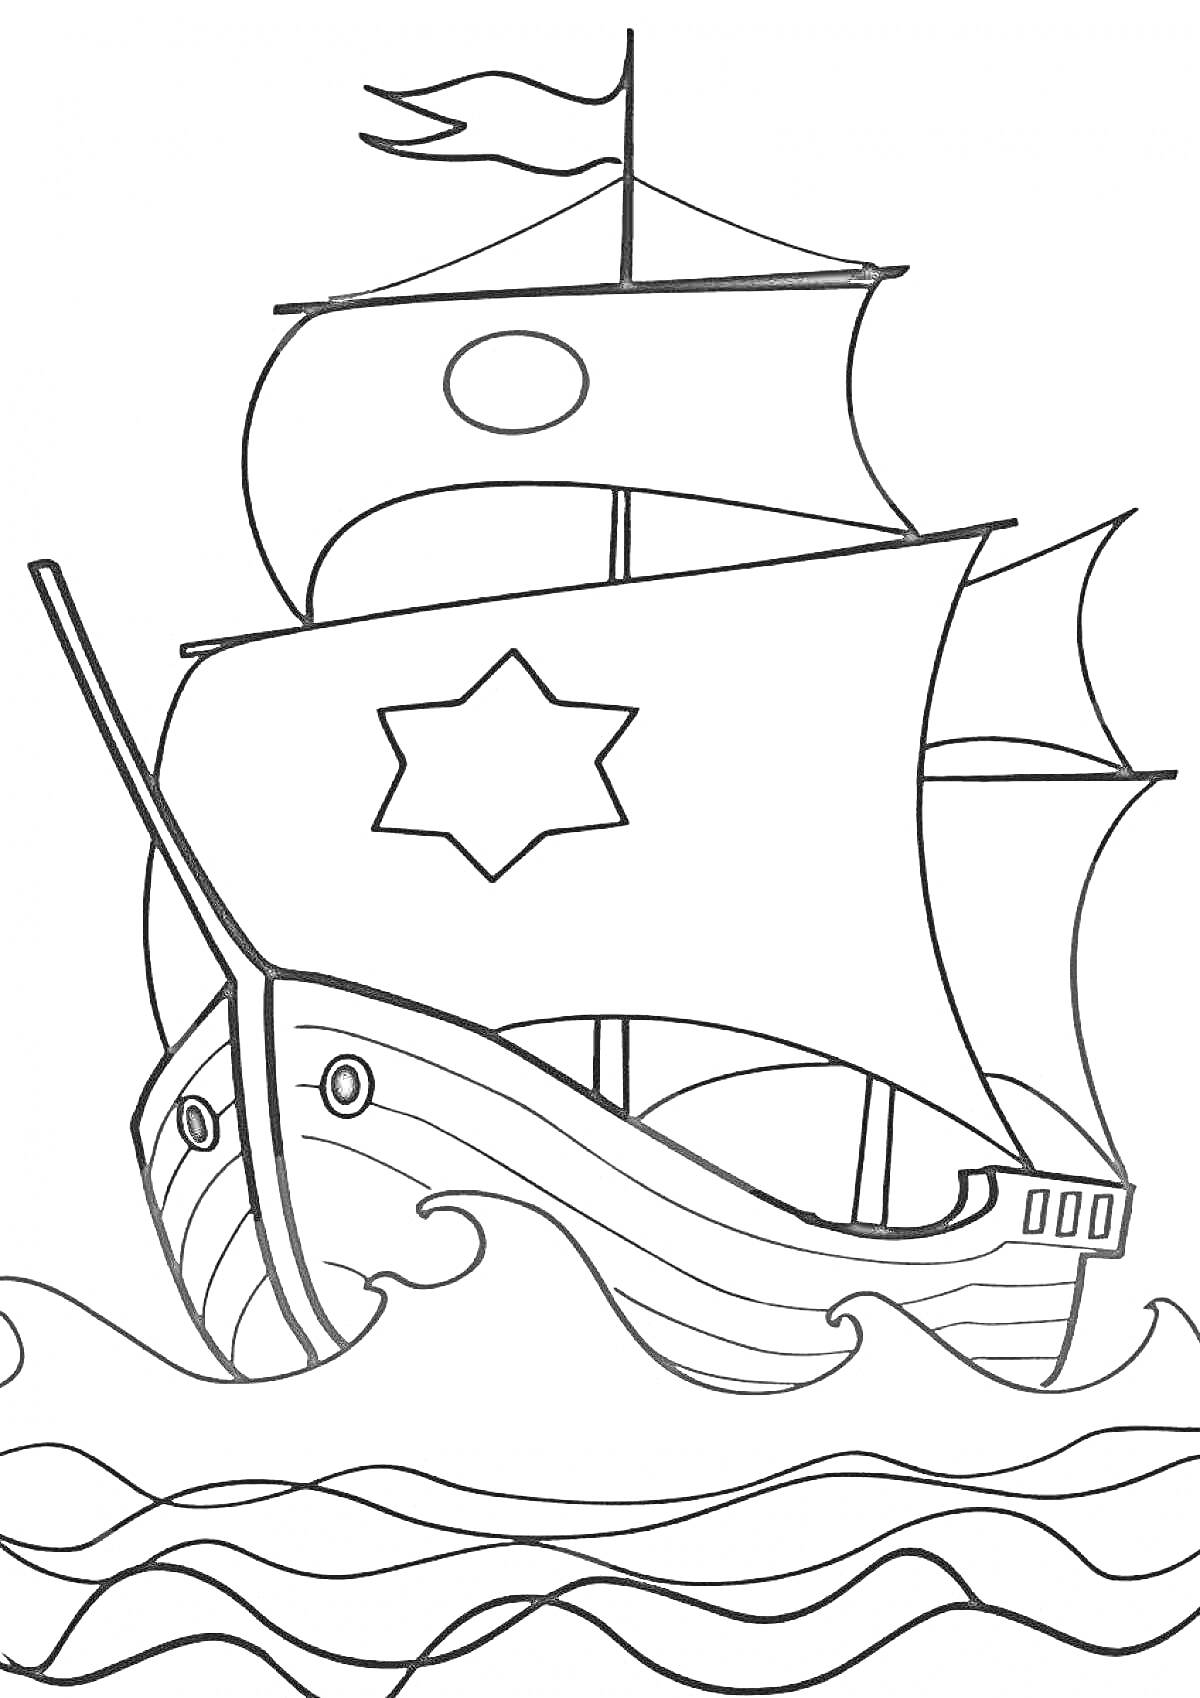 Раскраска Парусный корабль на волнах с флагом и звёздным символом на парусе###